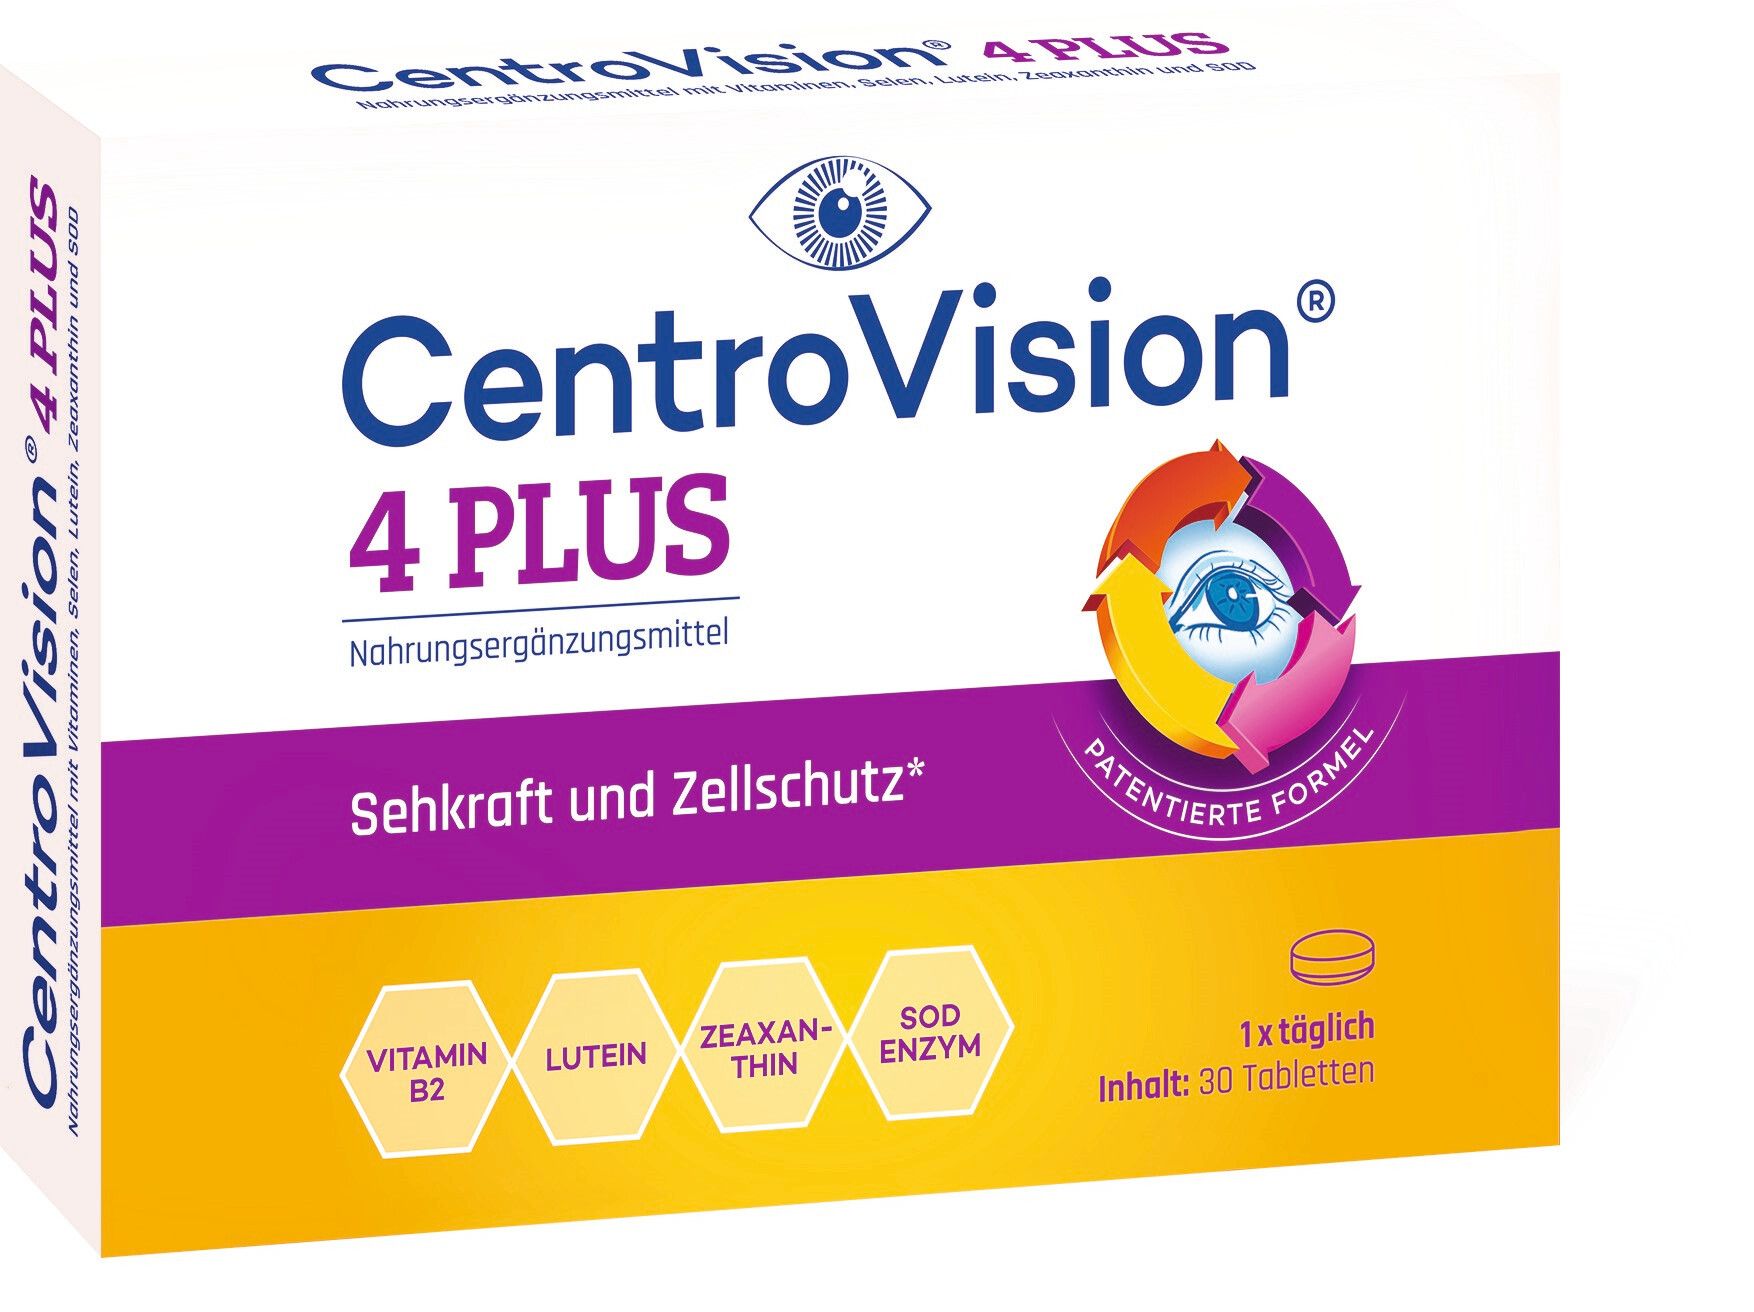 CentroVision® 4 PLUS